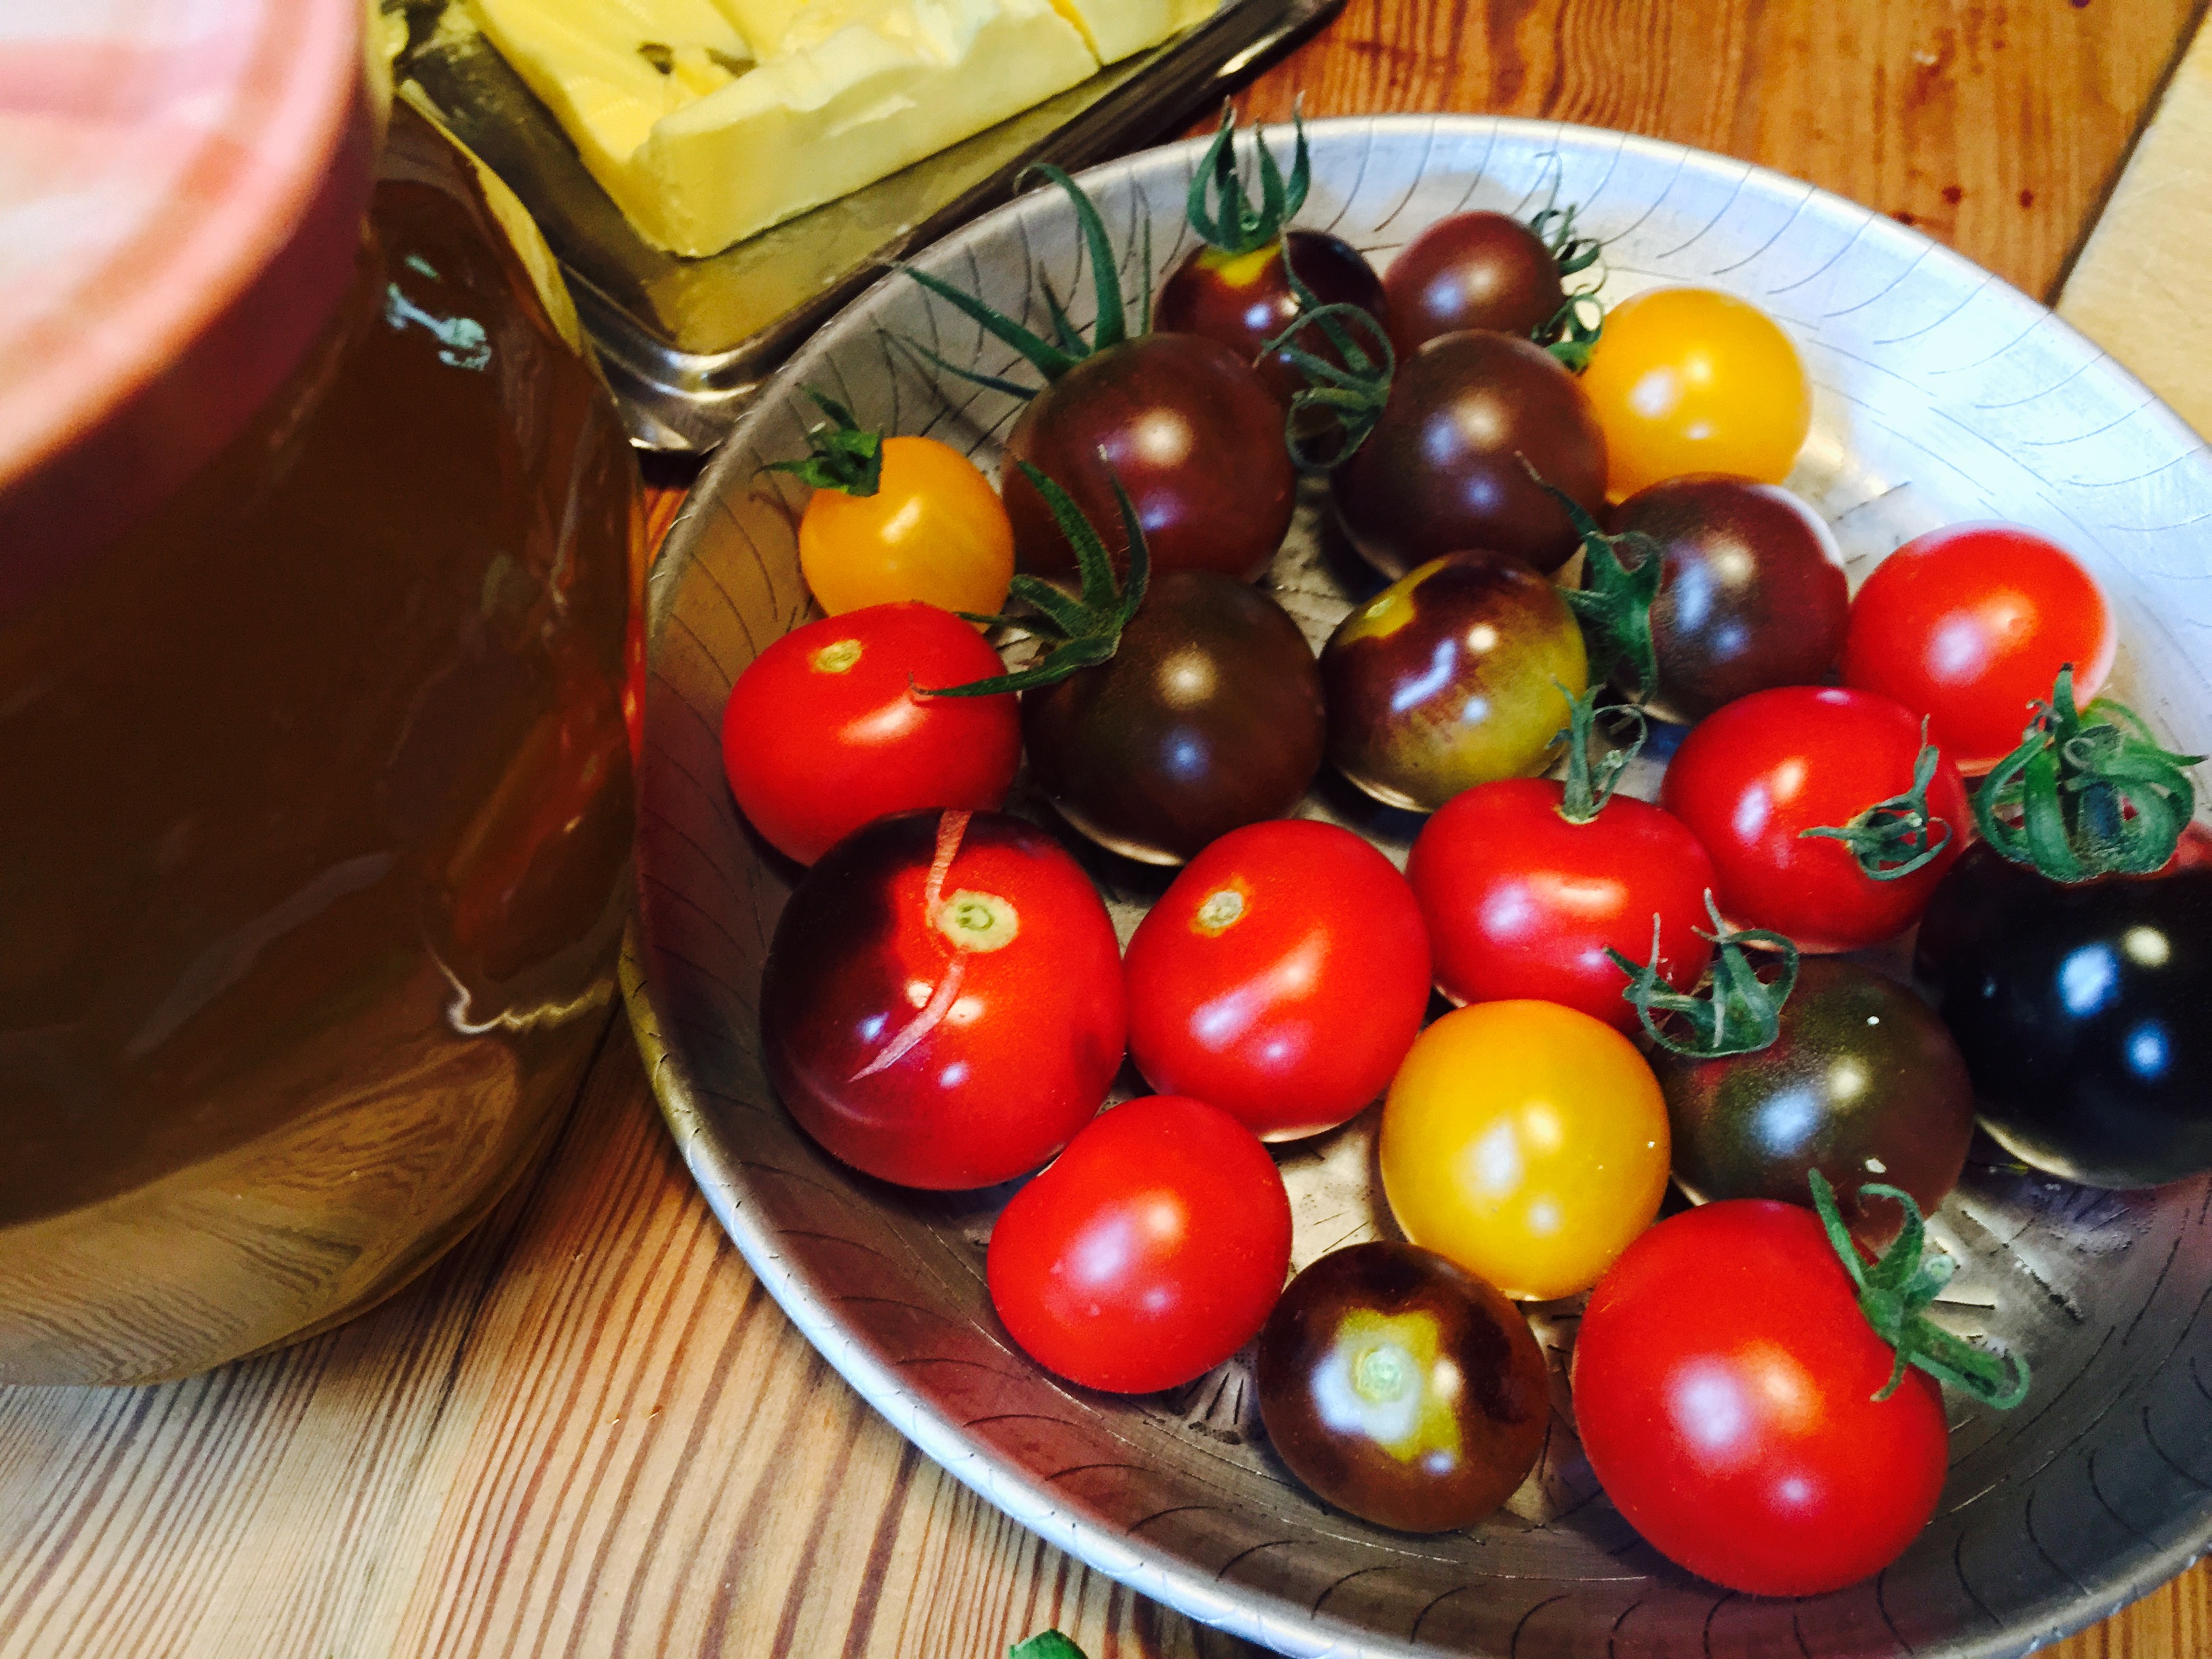 Odla tomater, lök och gurkor , sen stundar skördefesten.